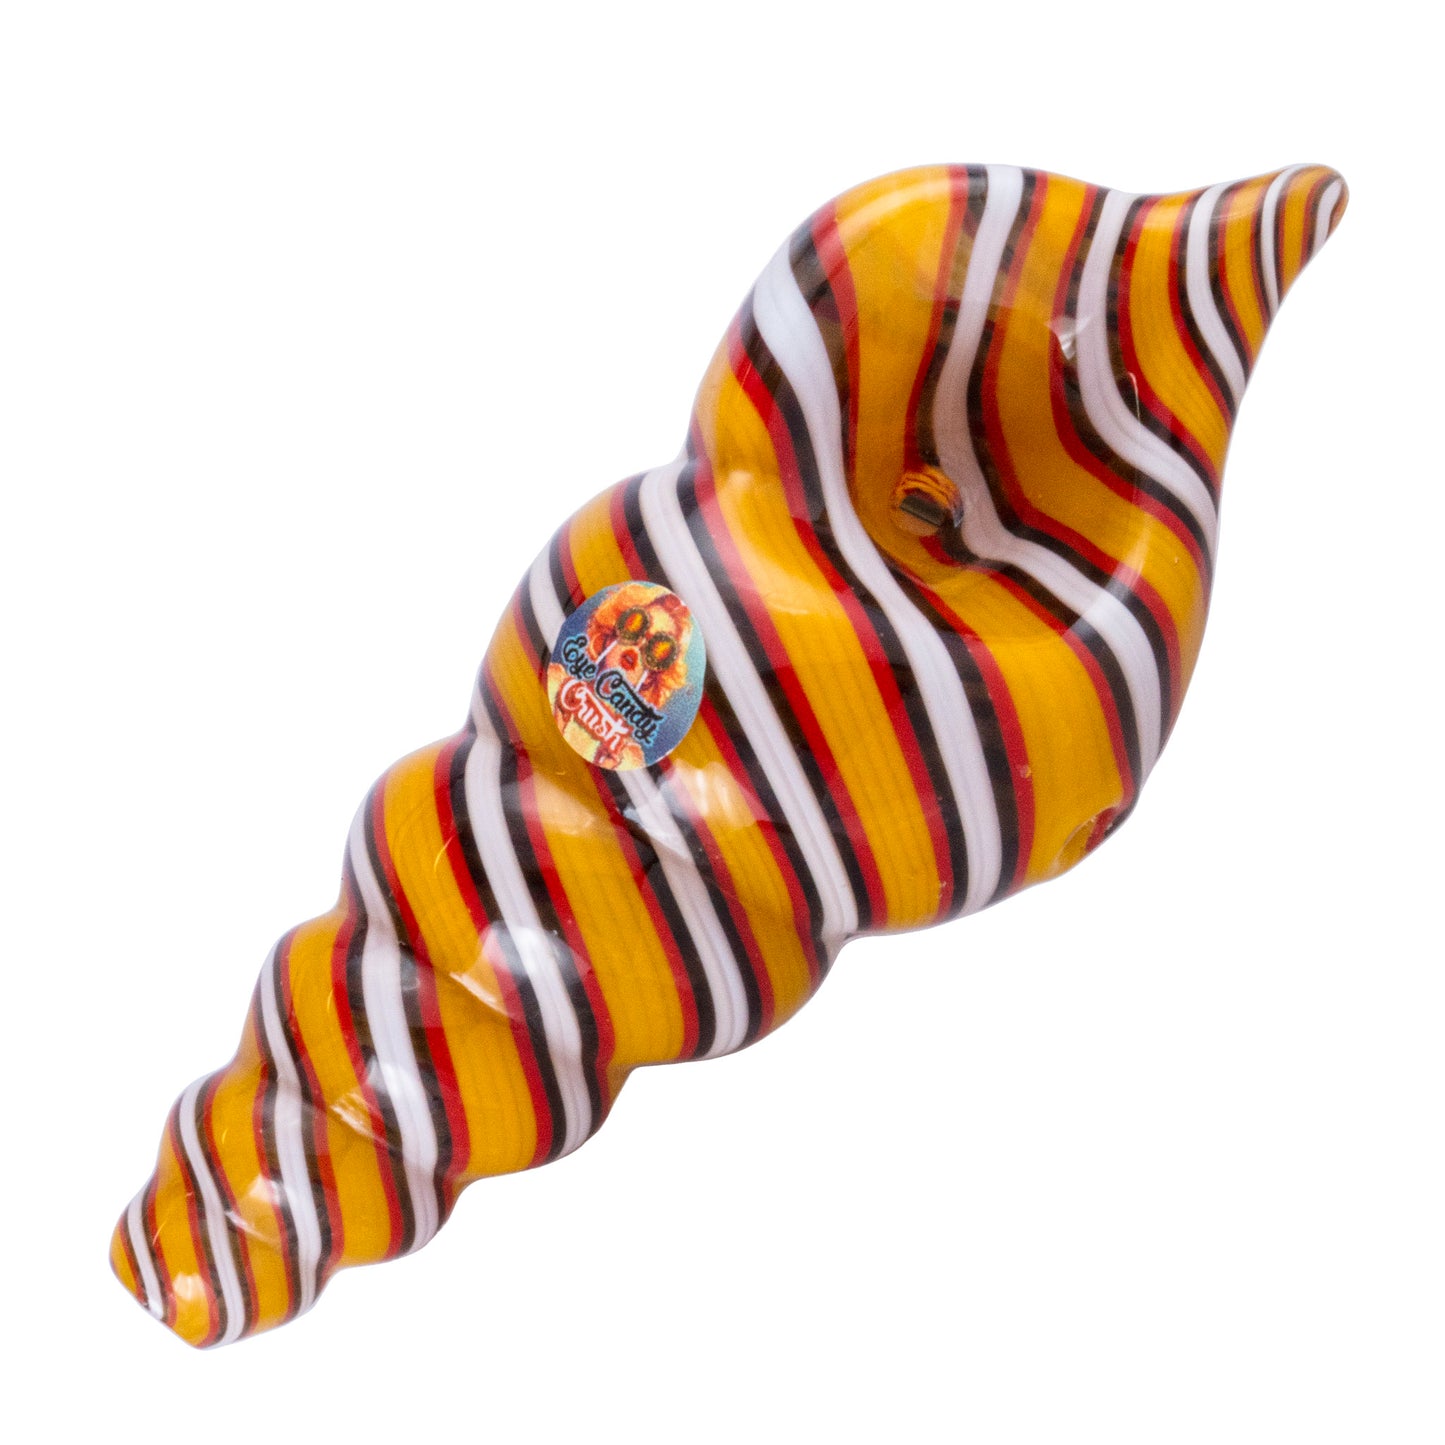 Sea Shells (Various Colors)